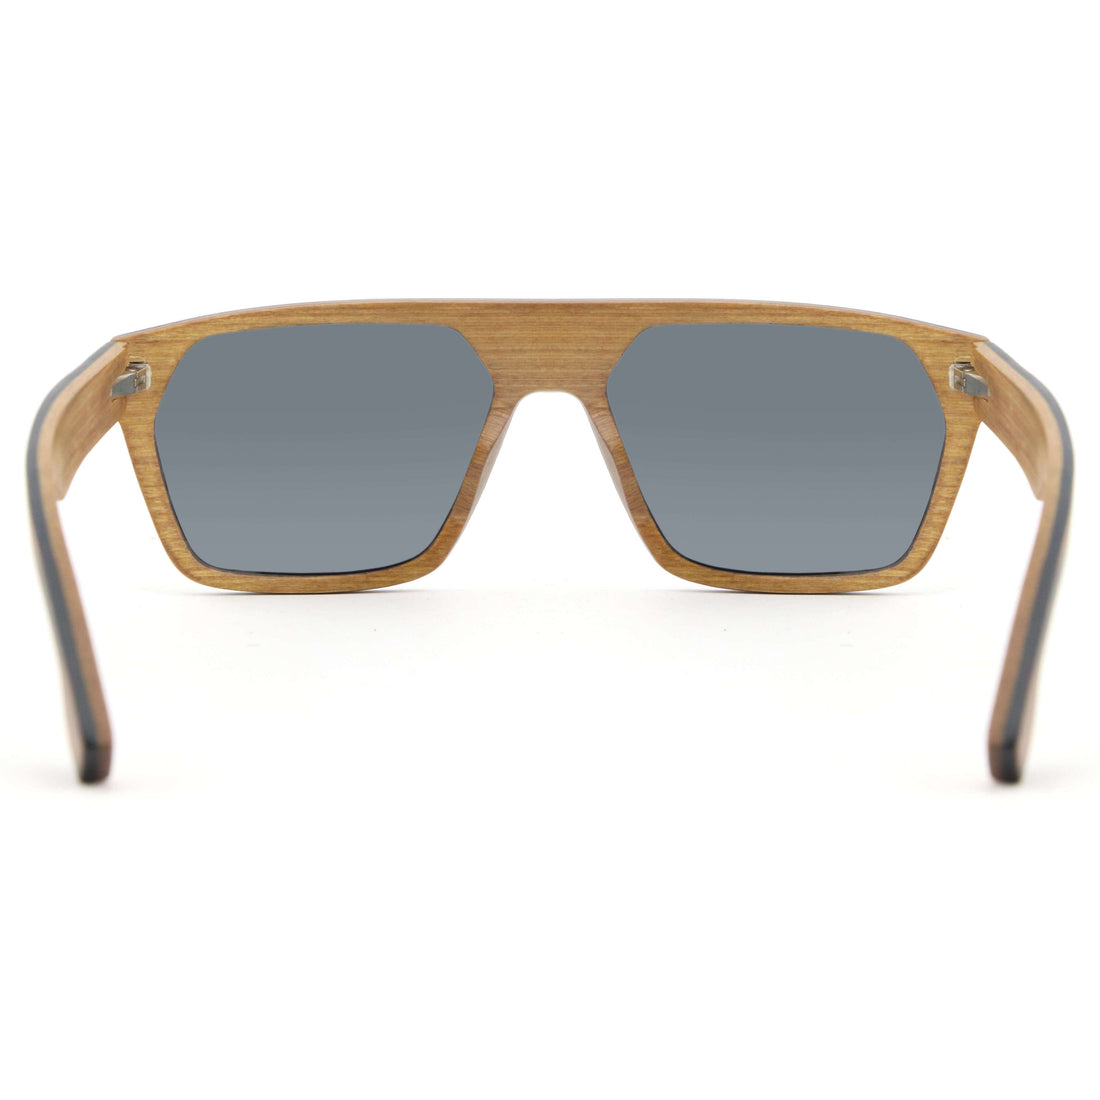 Vilo Rio - Wooden Sunglasses: